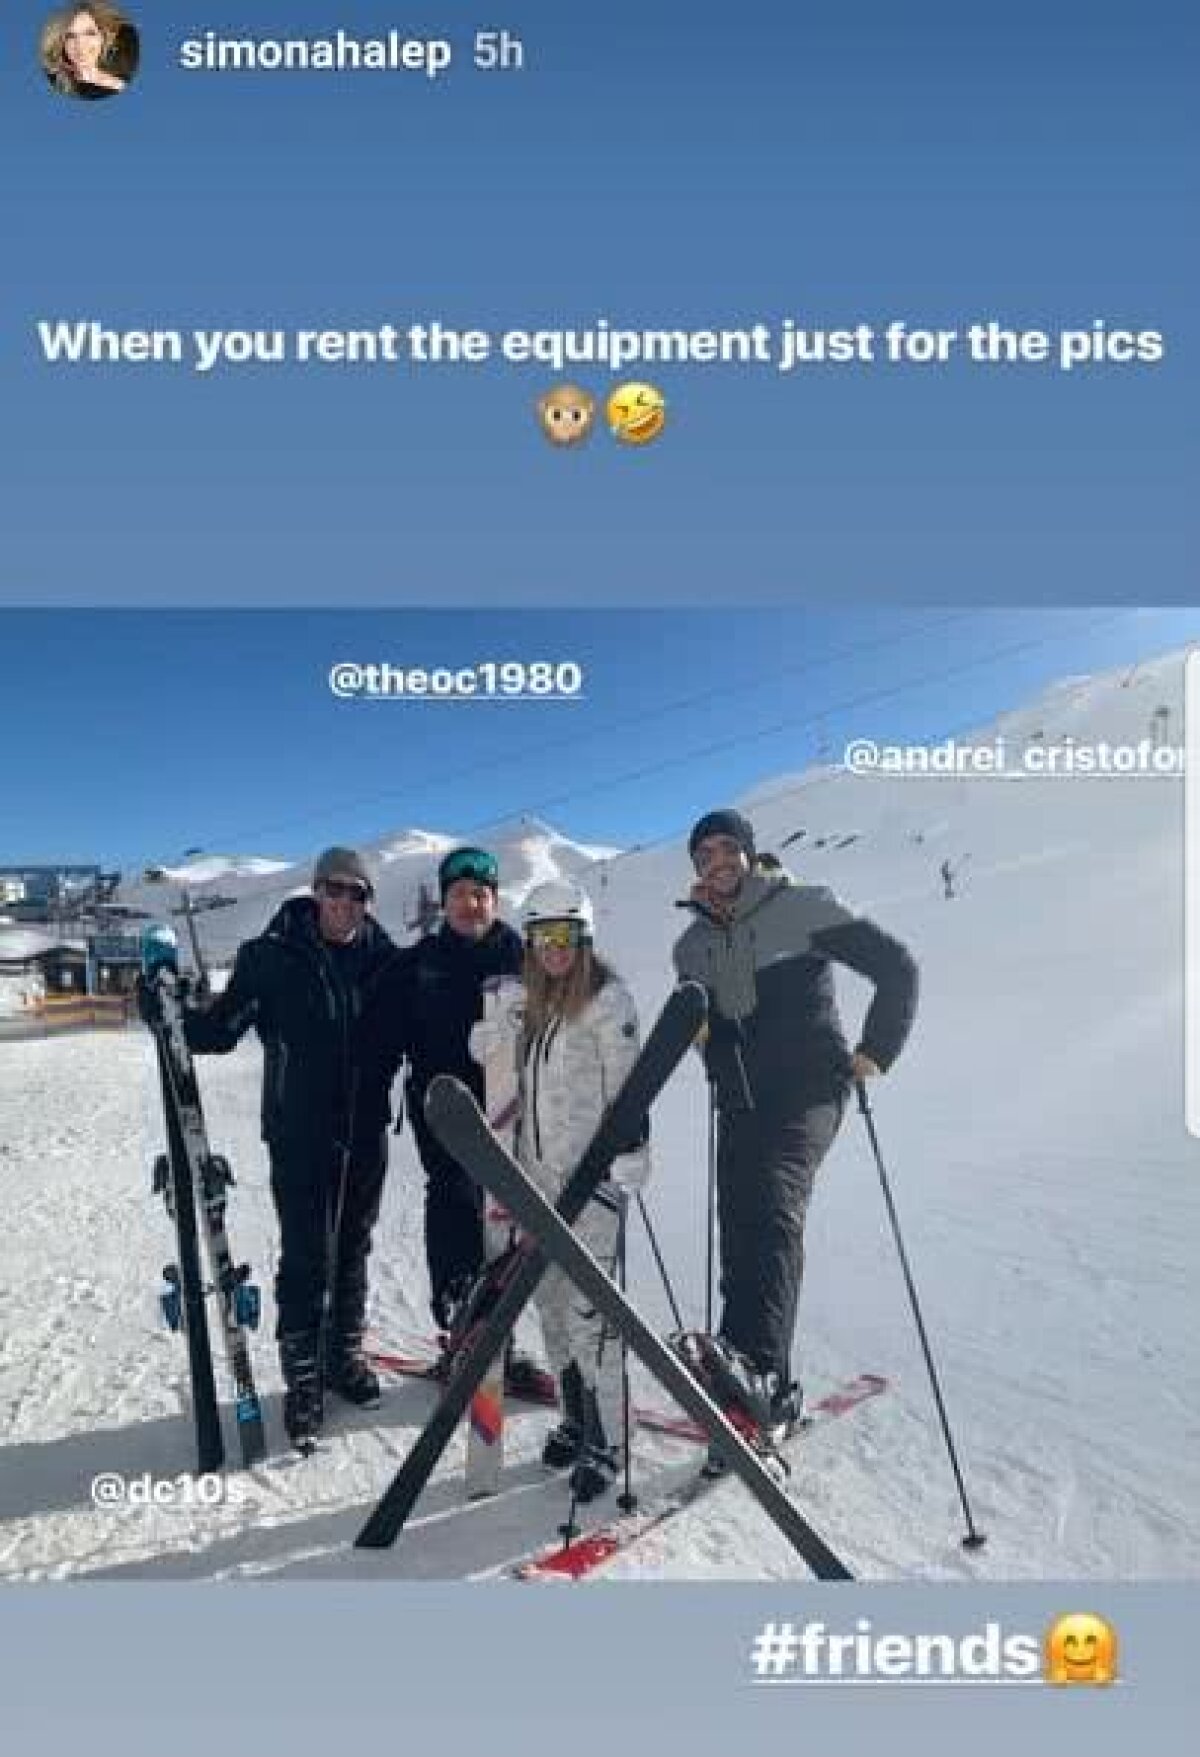 GALERIE FOTO Au încetat colaborarea, dar asta nu i-a oprit să meargă împreună în vacanță » Imagini spectaculoase cu Simona Halep și Darren Cahill în Alpii austrieci